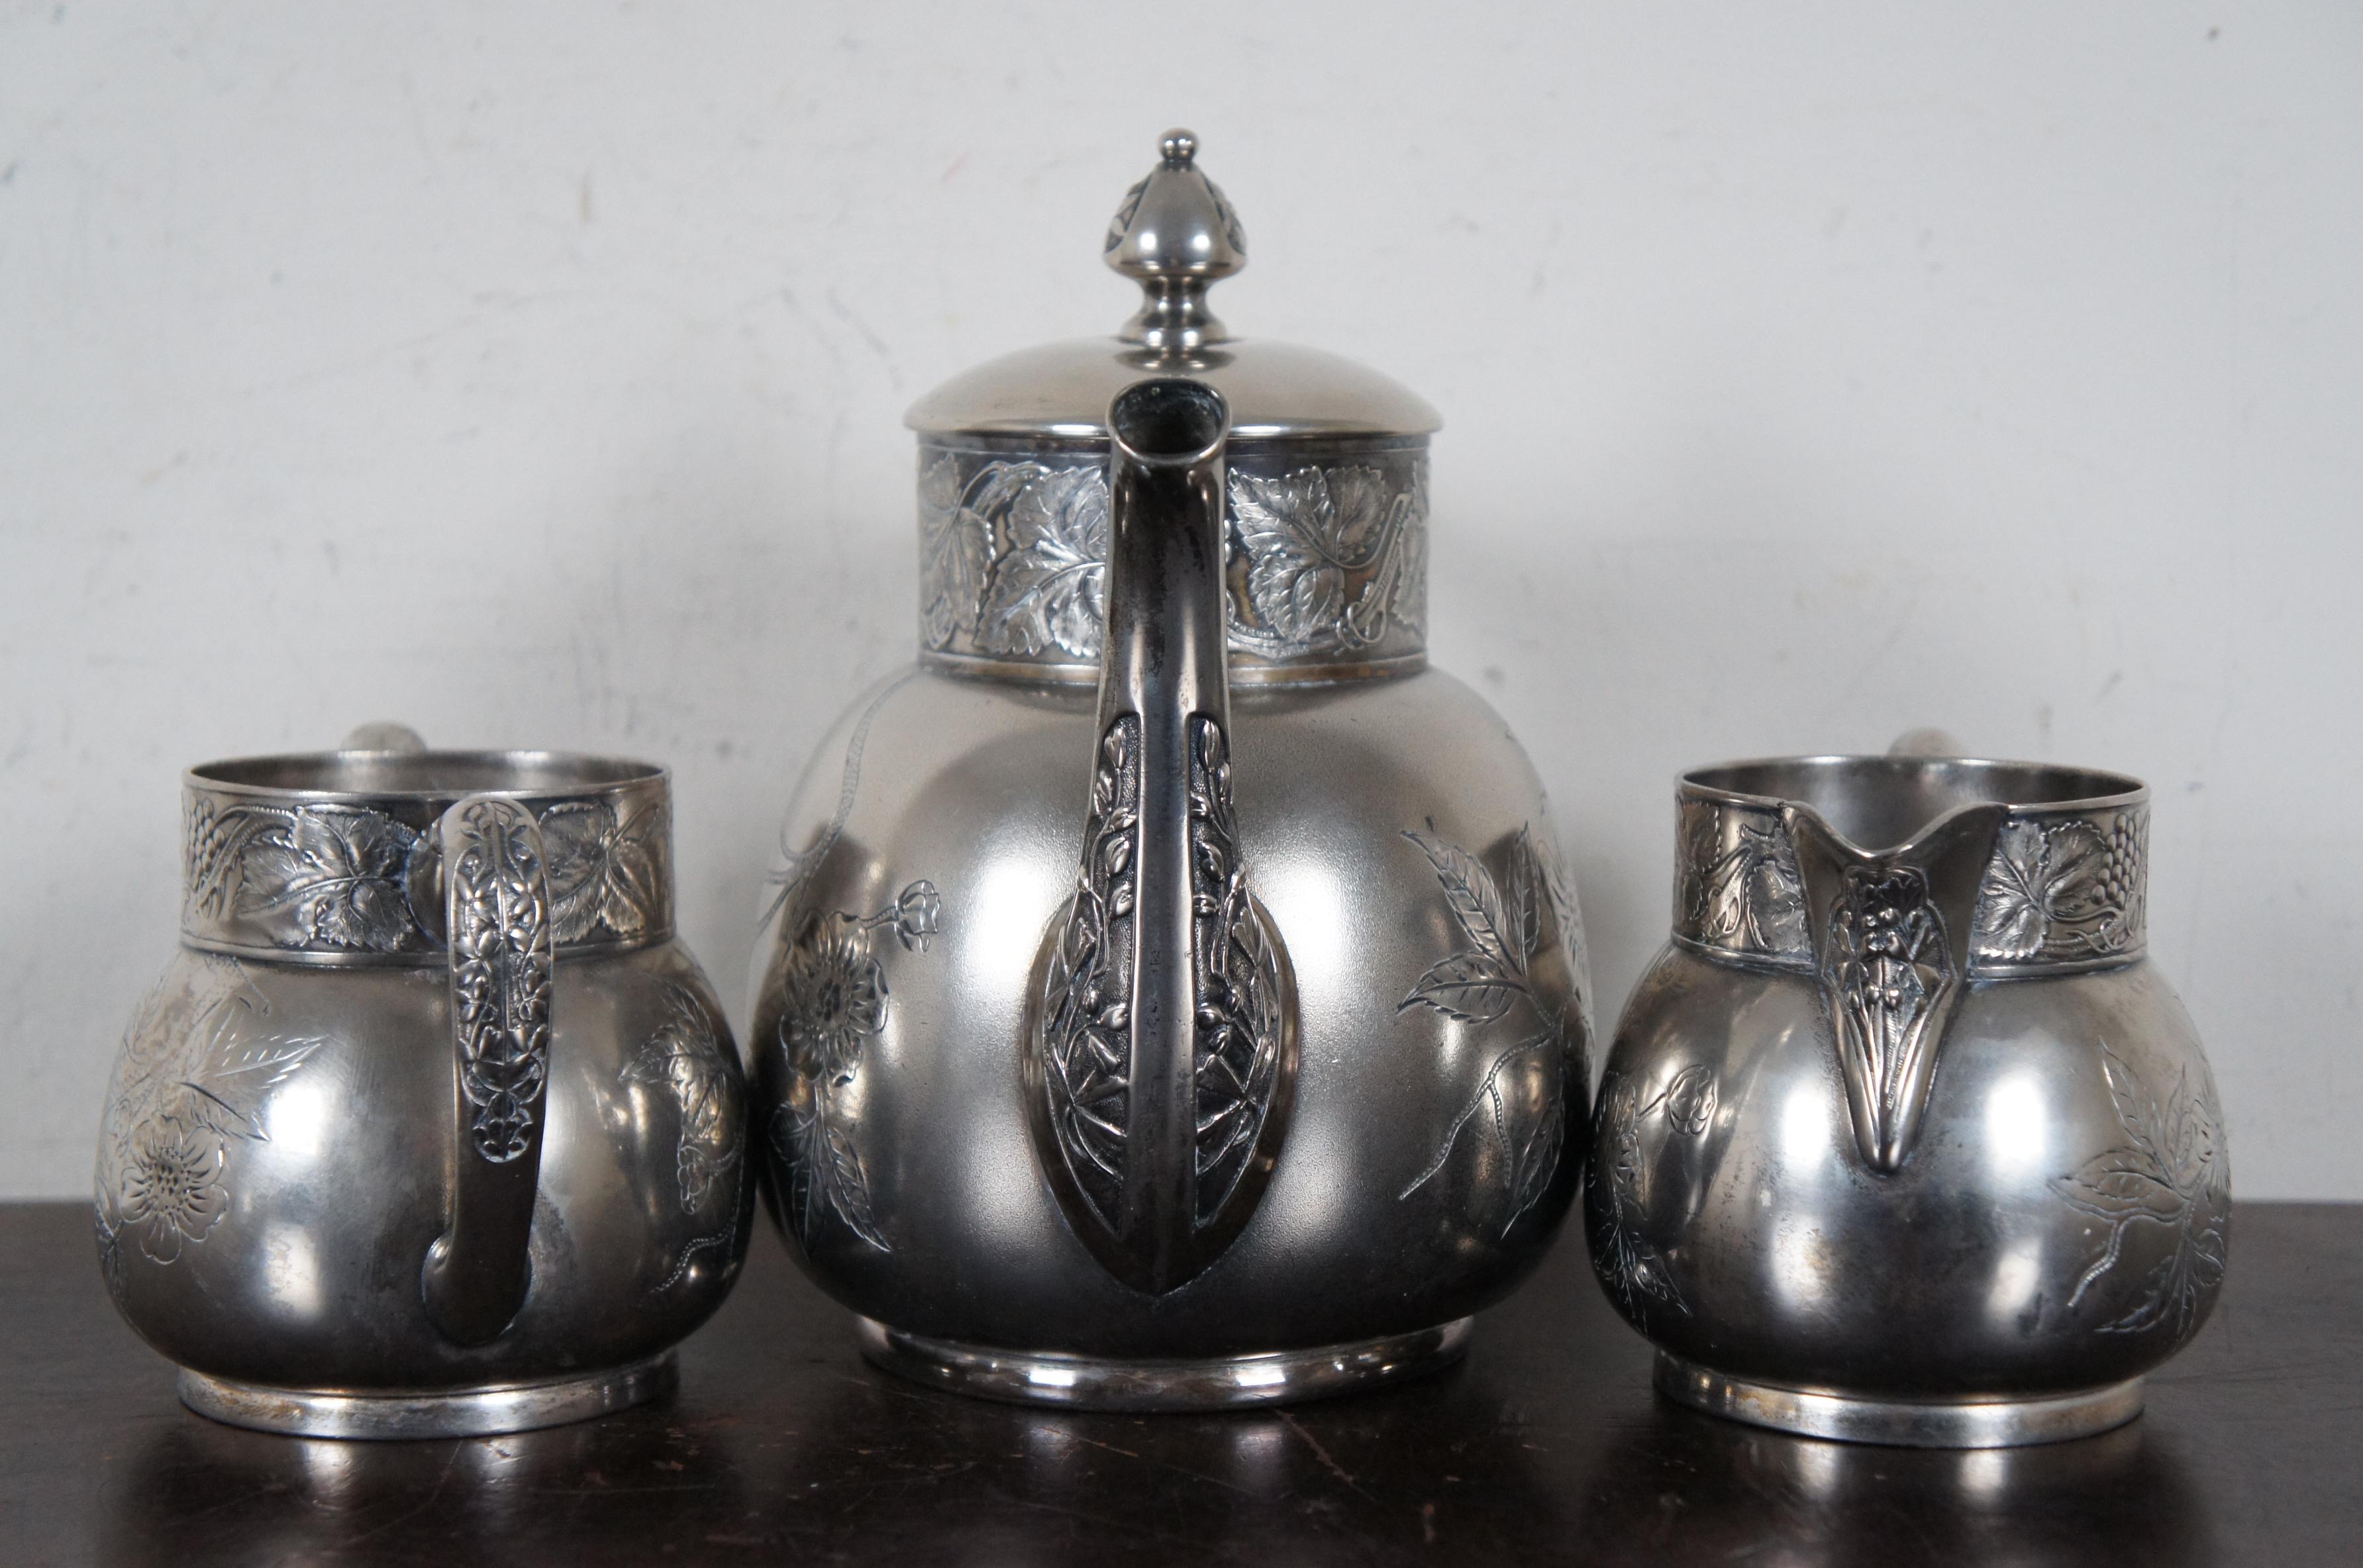 20th Century Antique Victorian Aesthetic Pairpoint Quadruple Plated Tea Set Cream Sugar Pot